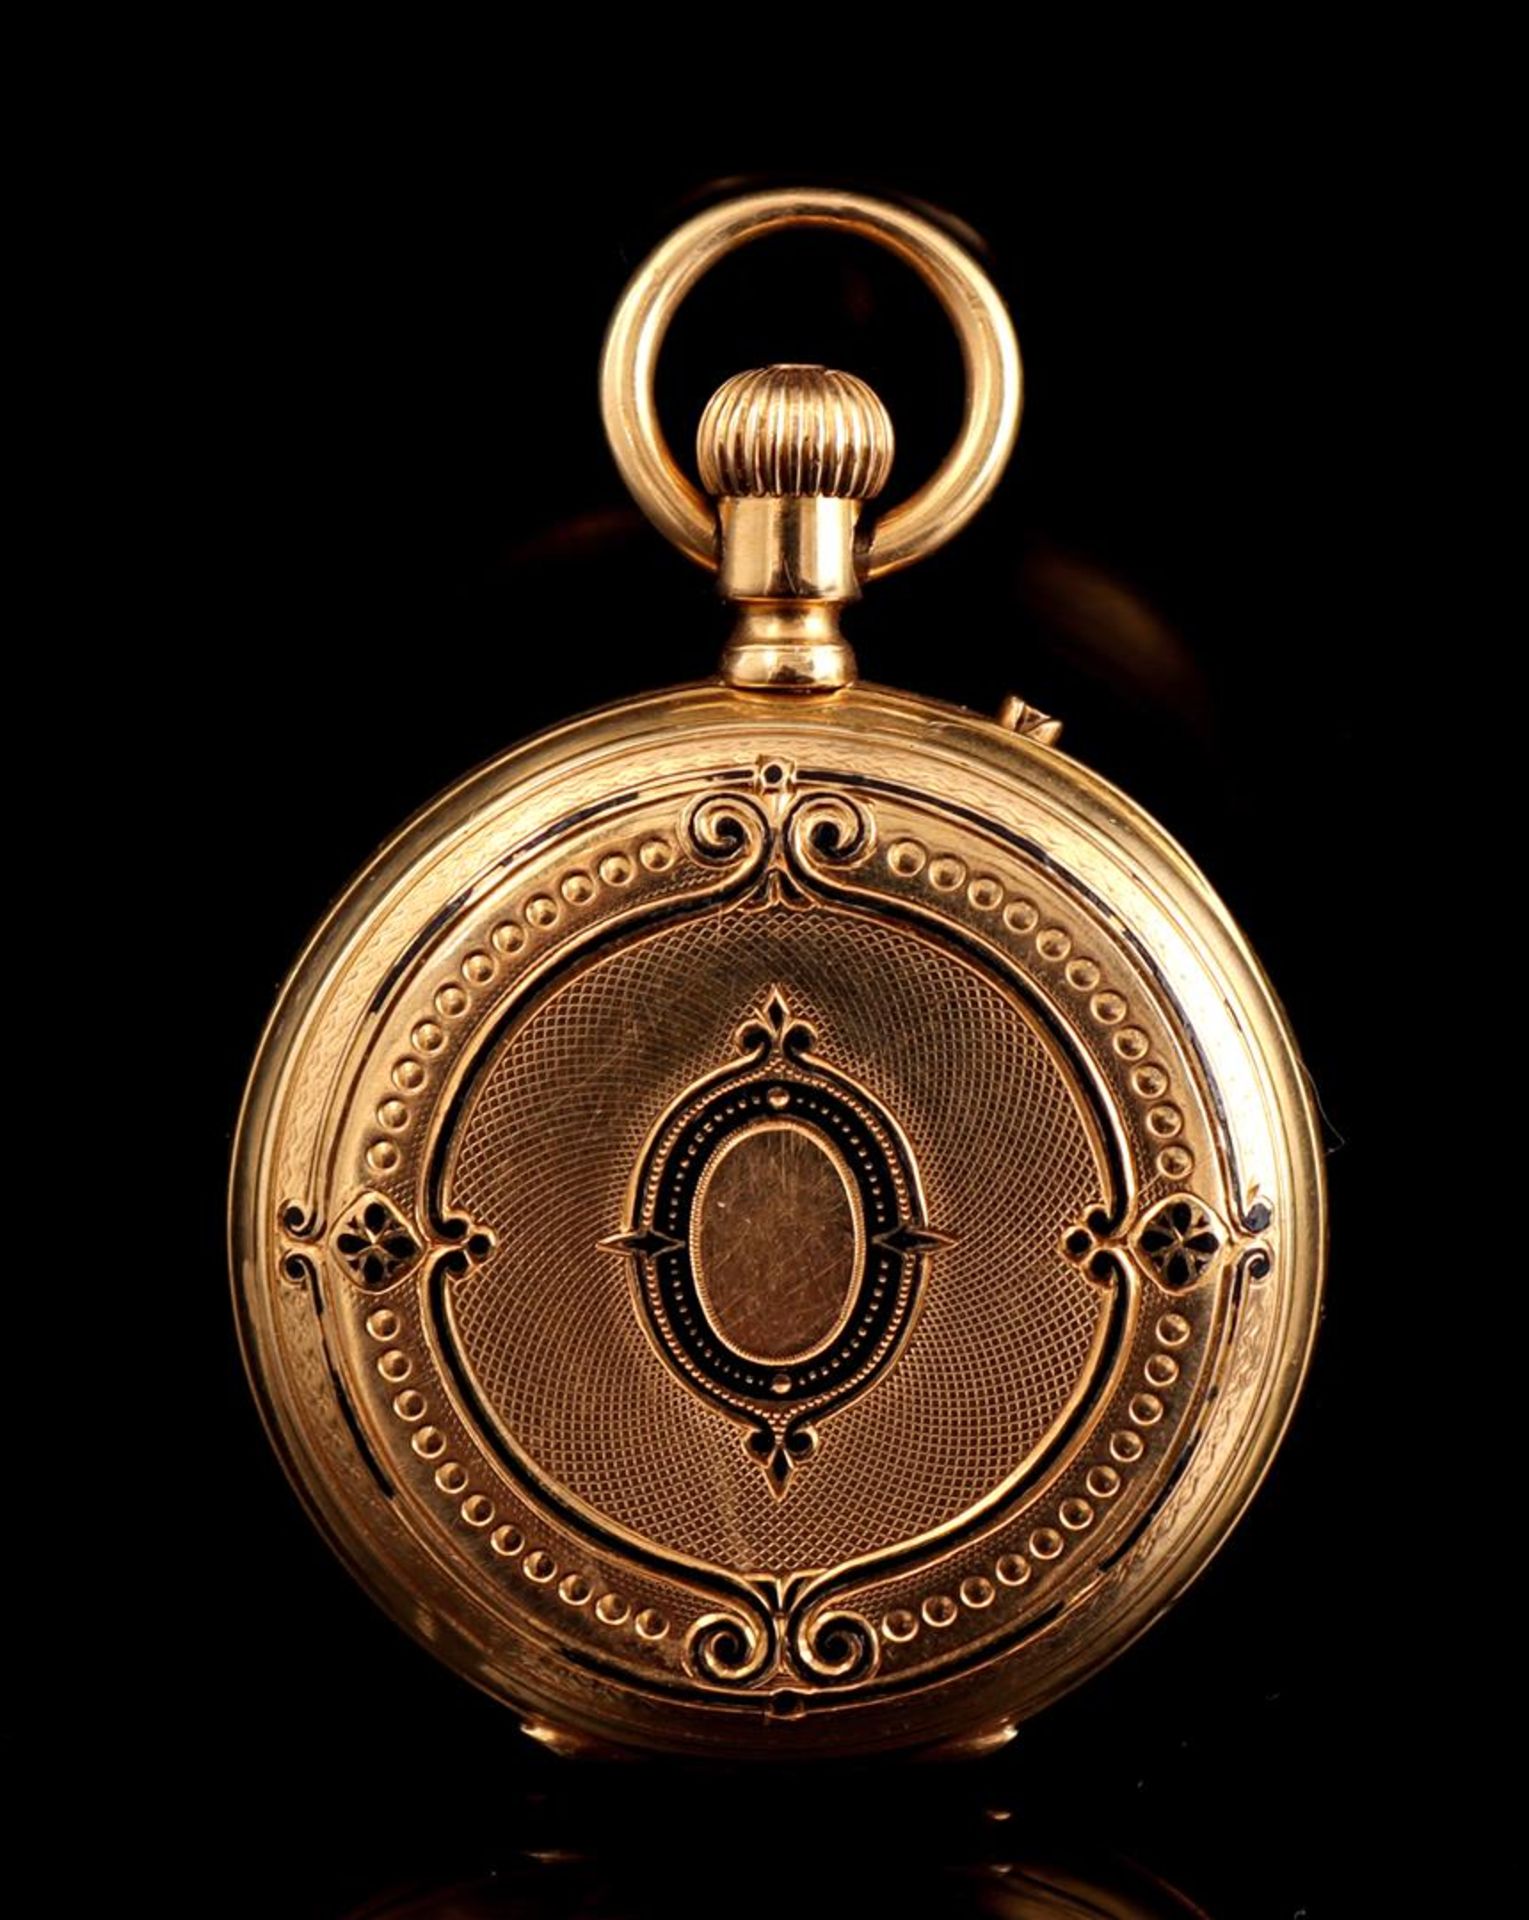 Vacheron & Constantin Genève pocket watch - Image 2 of 3